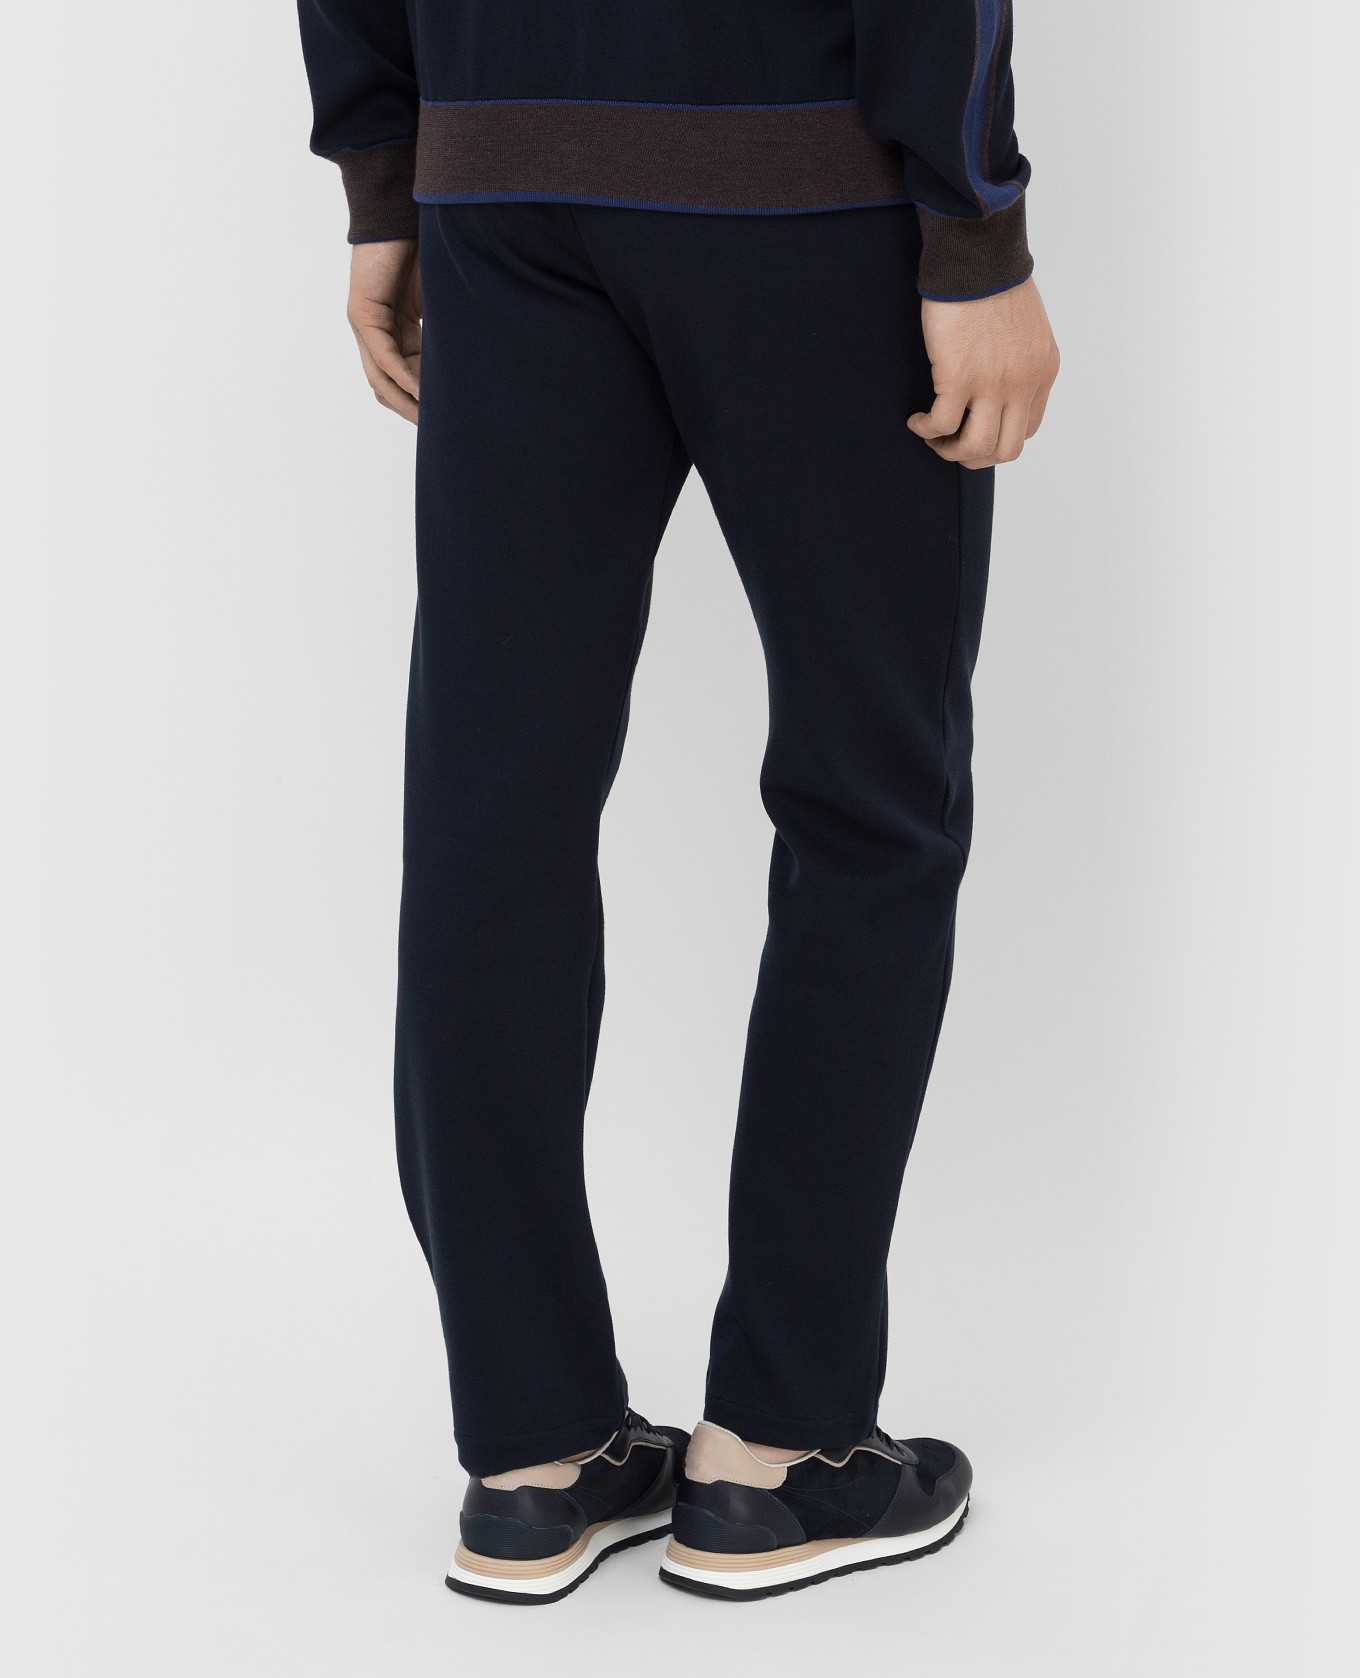 Bertolo Cashmere Темно-синие спортивные брюки 902088001965 изображение 4